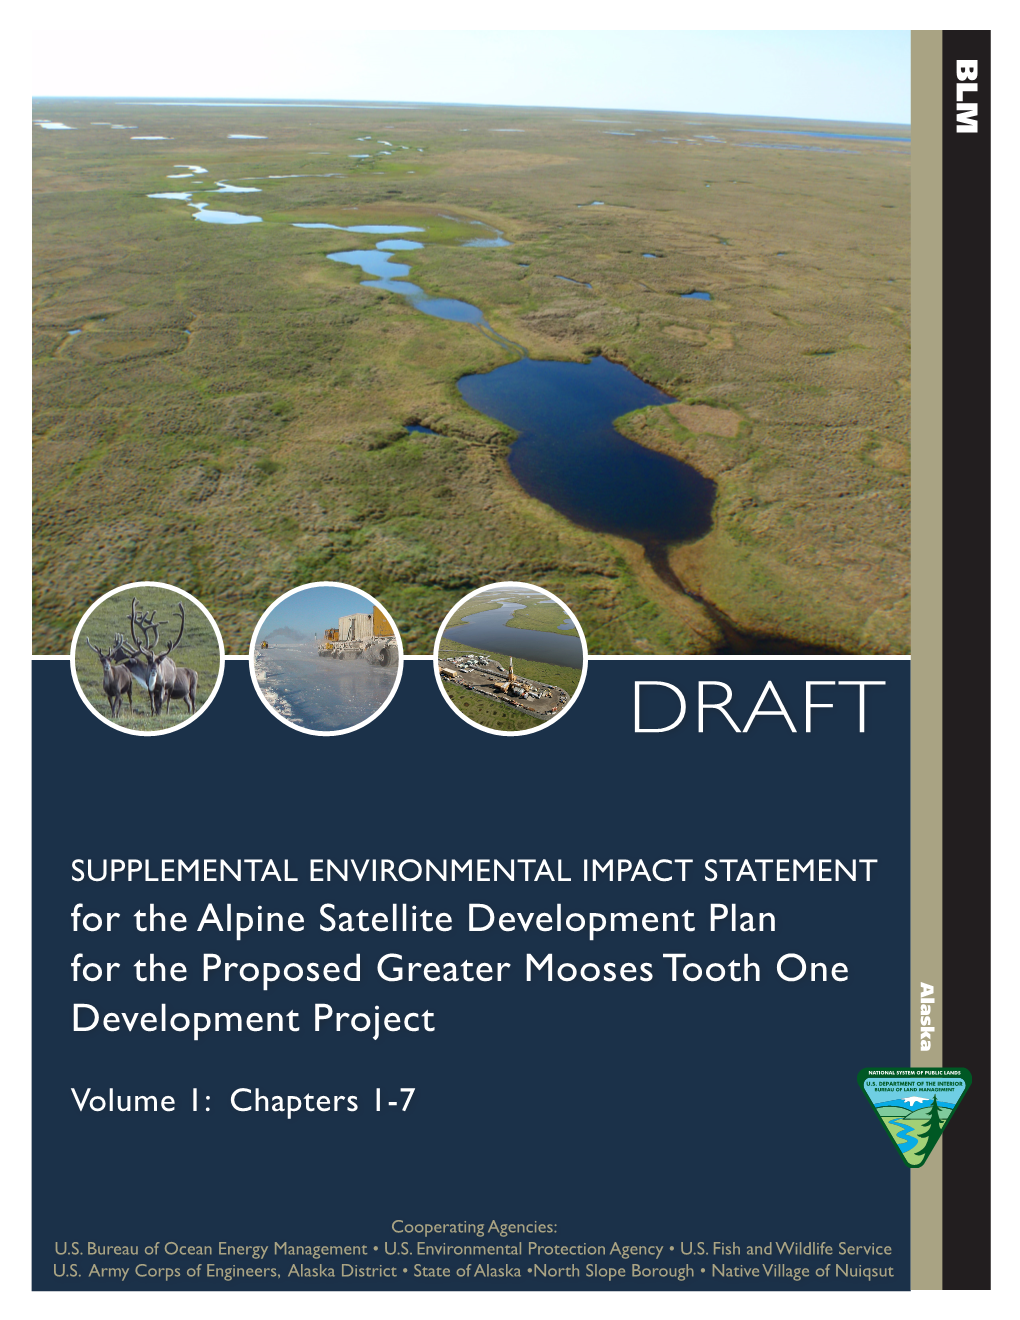 Alpine Satellite Development Plan Supplemental